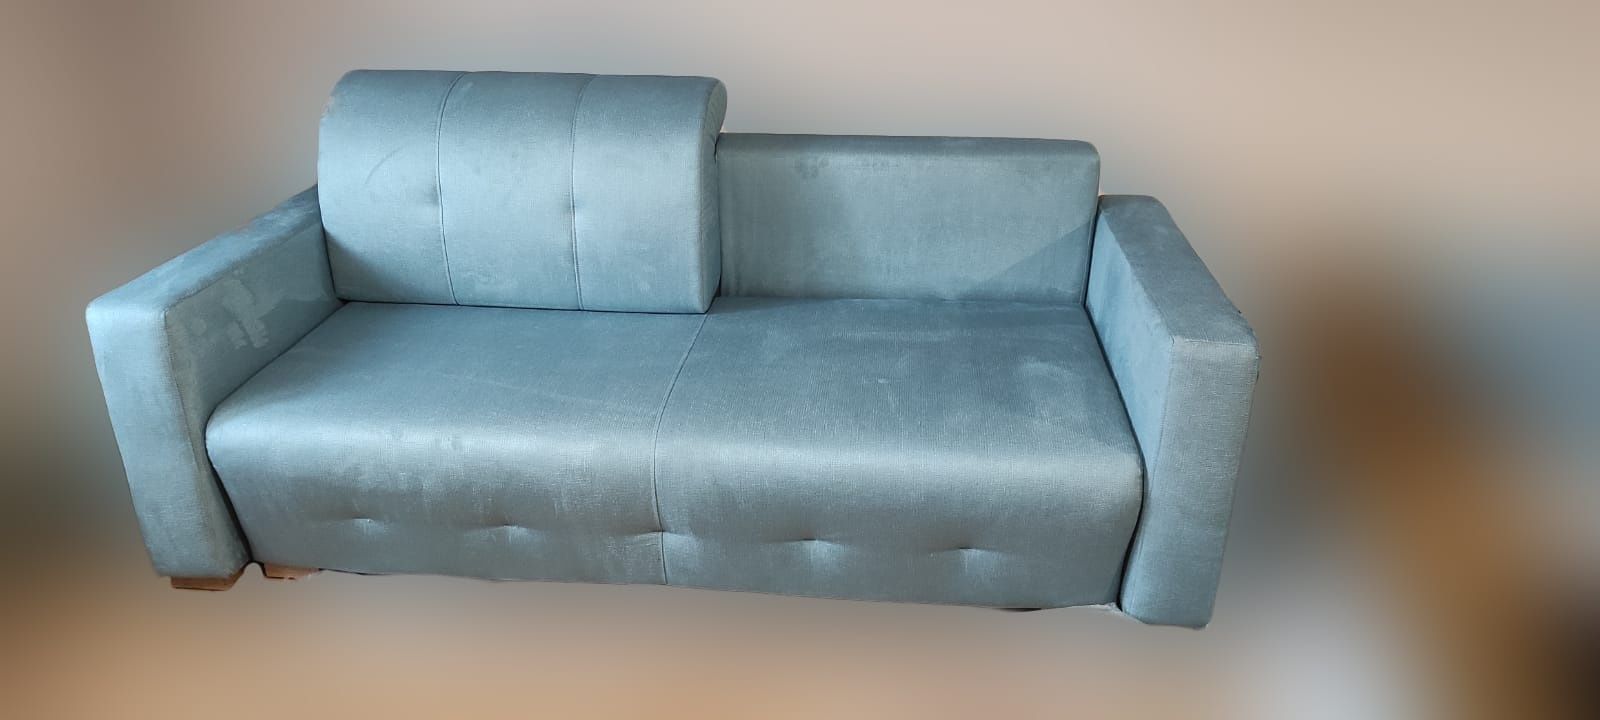 Rozkładana sofa na bonelu z  pojemnikiem na pościel.